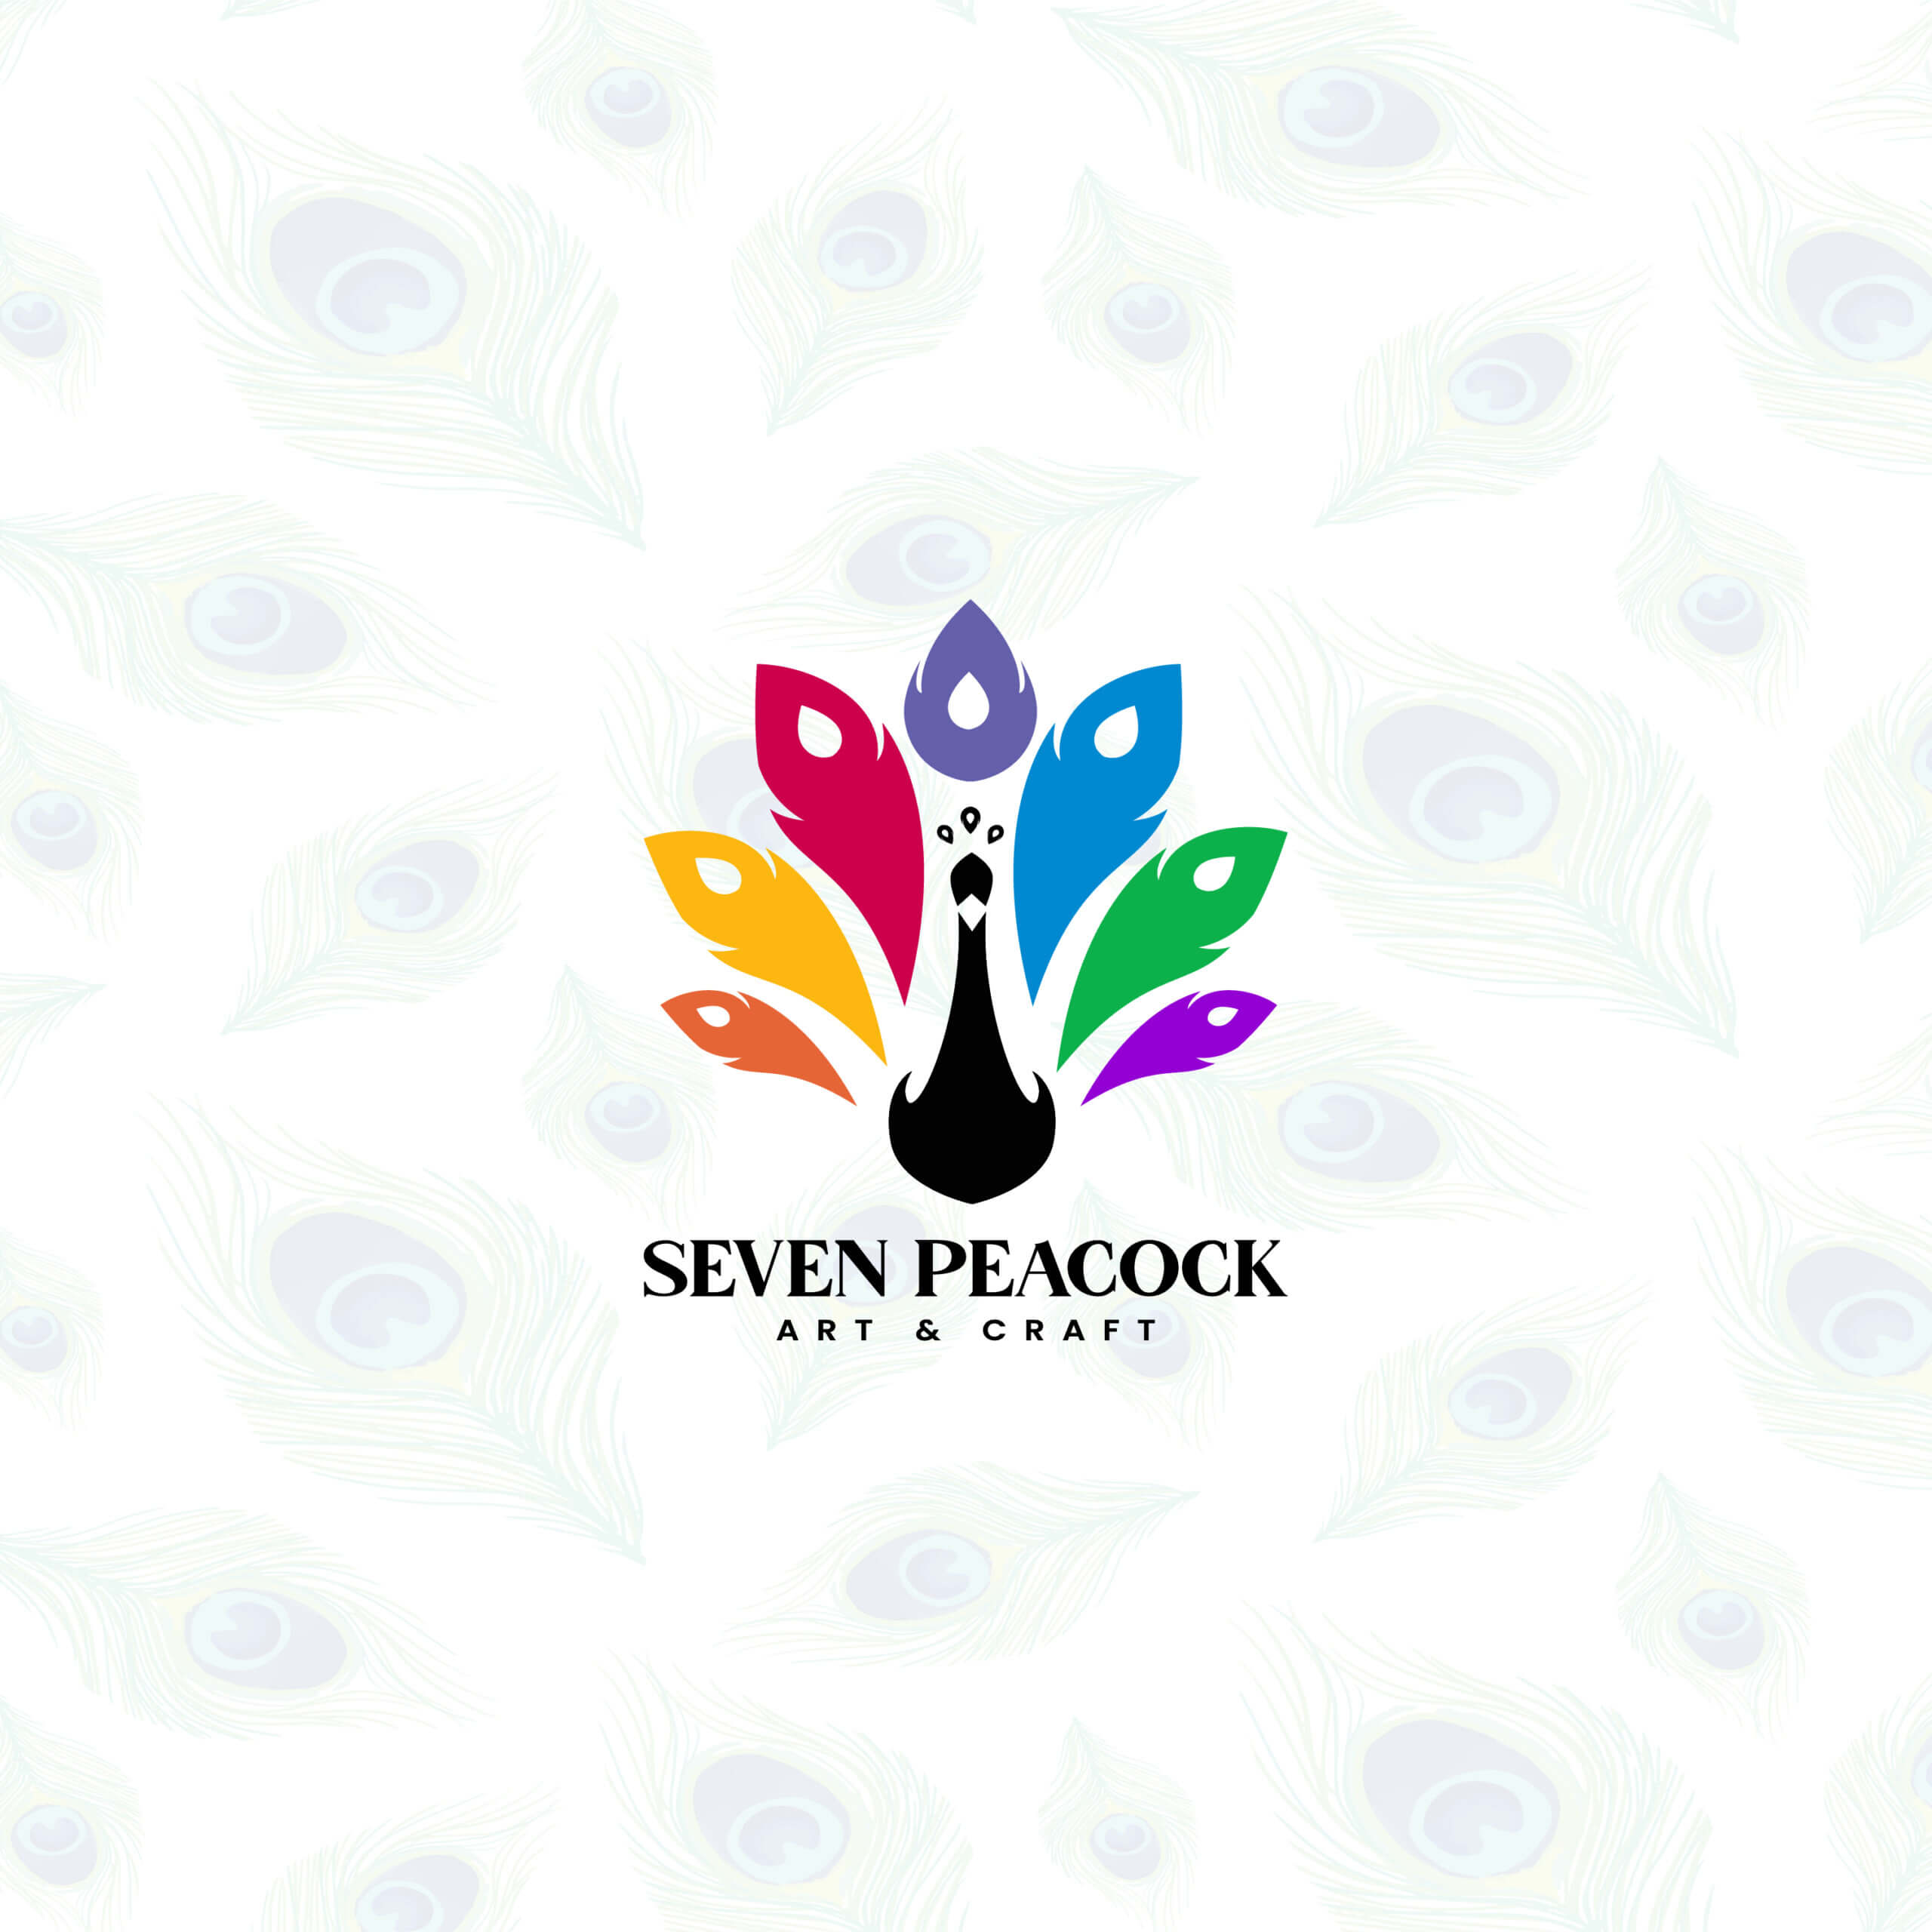 Seven Peacock (2)